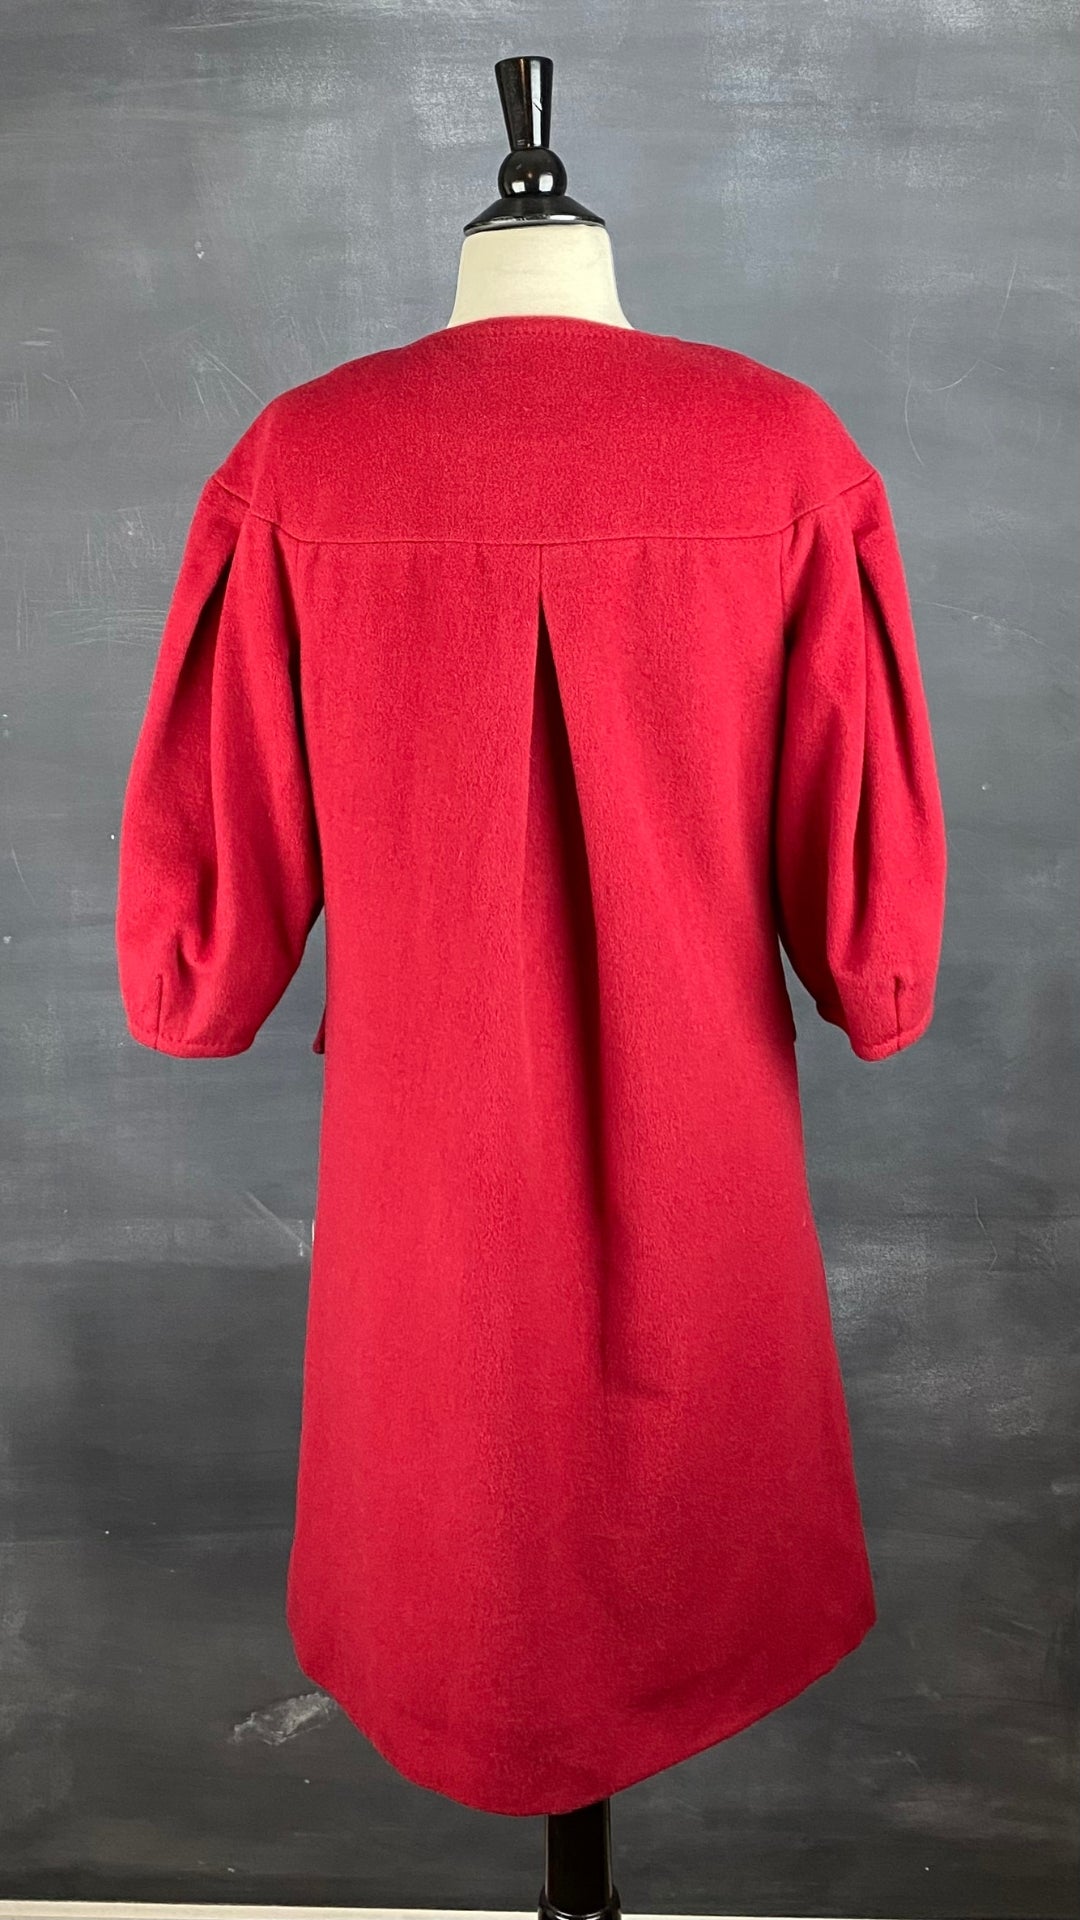 Manteau assez long en lainage rouge, manches ballons, BCBGMAXAZRIA, vue de dos.